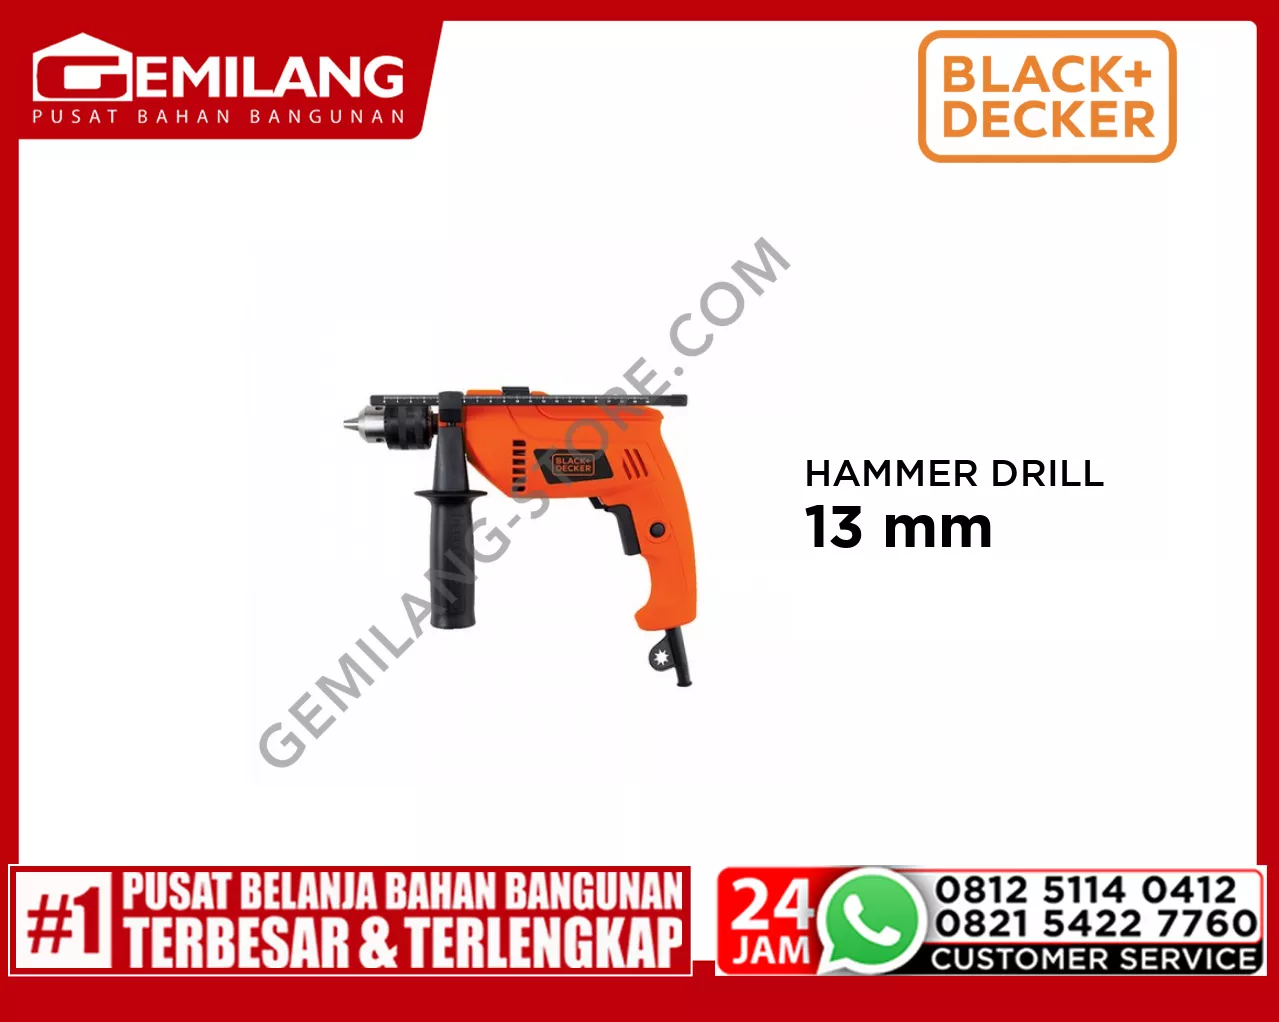 BLACK + DECKER HAMMER DRILL 13mm HD555KOPR-B1